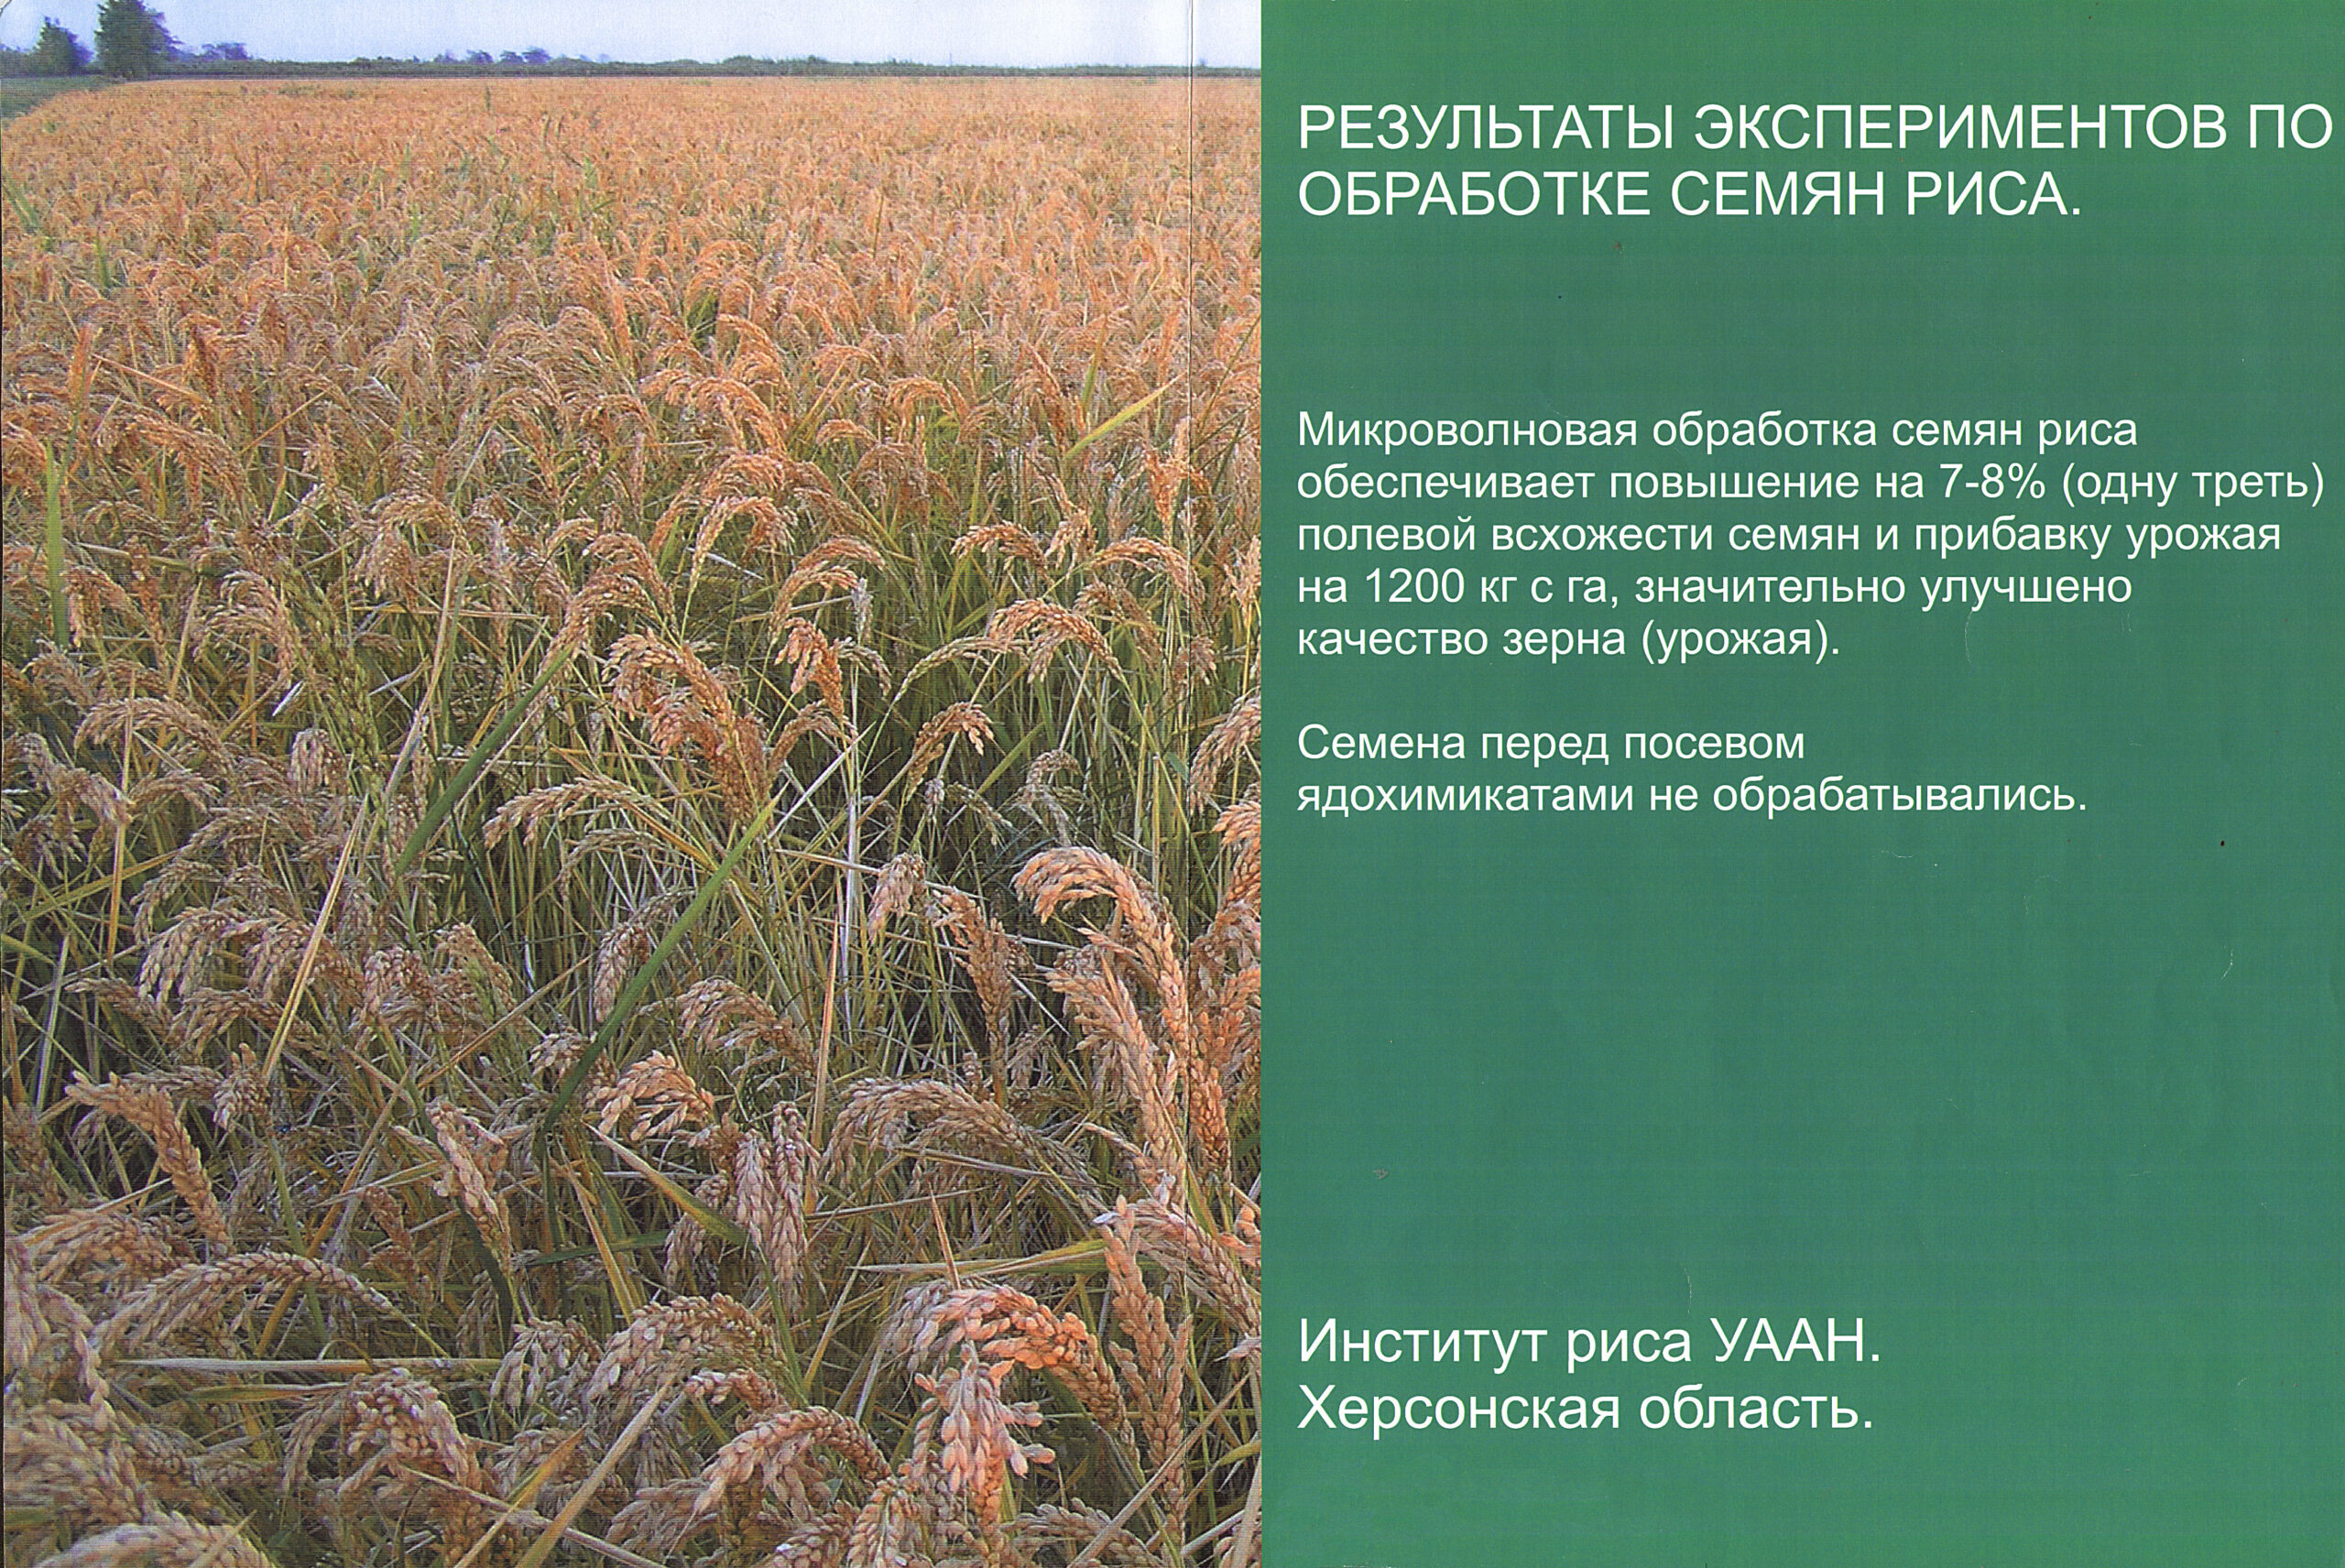 Результаты по обработки риса. Увеличение урожайности